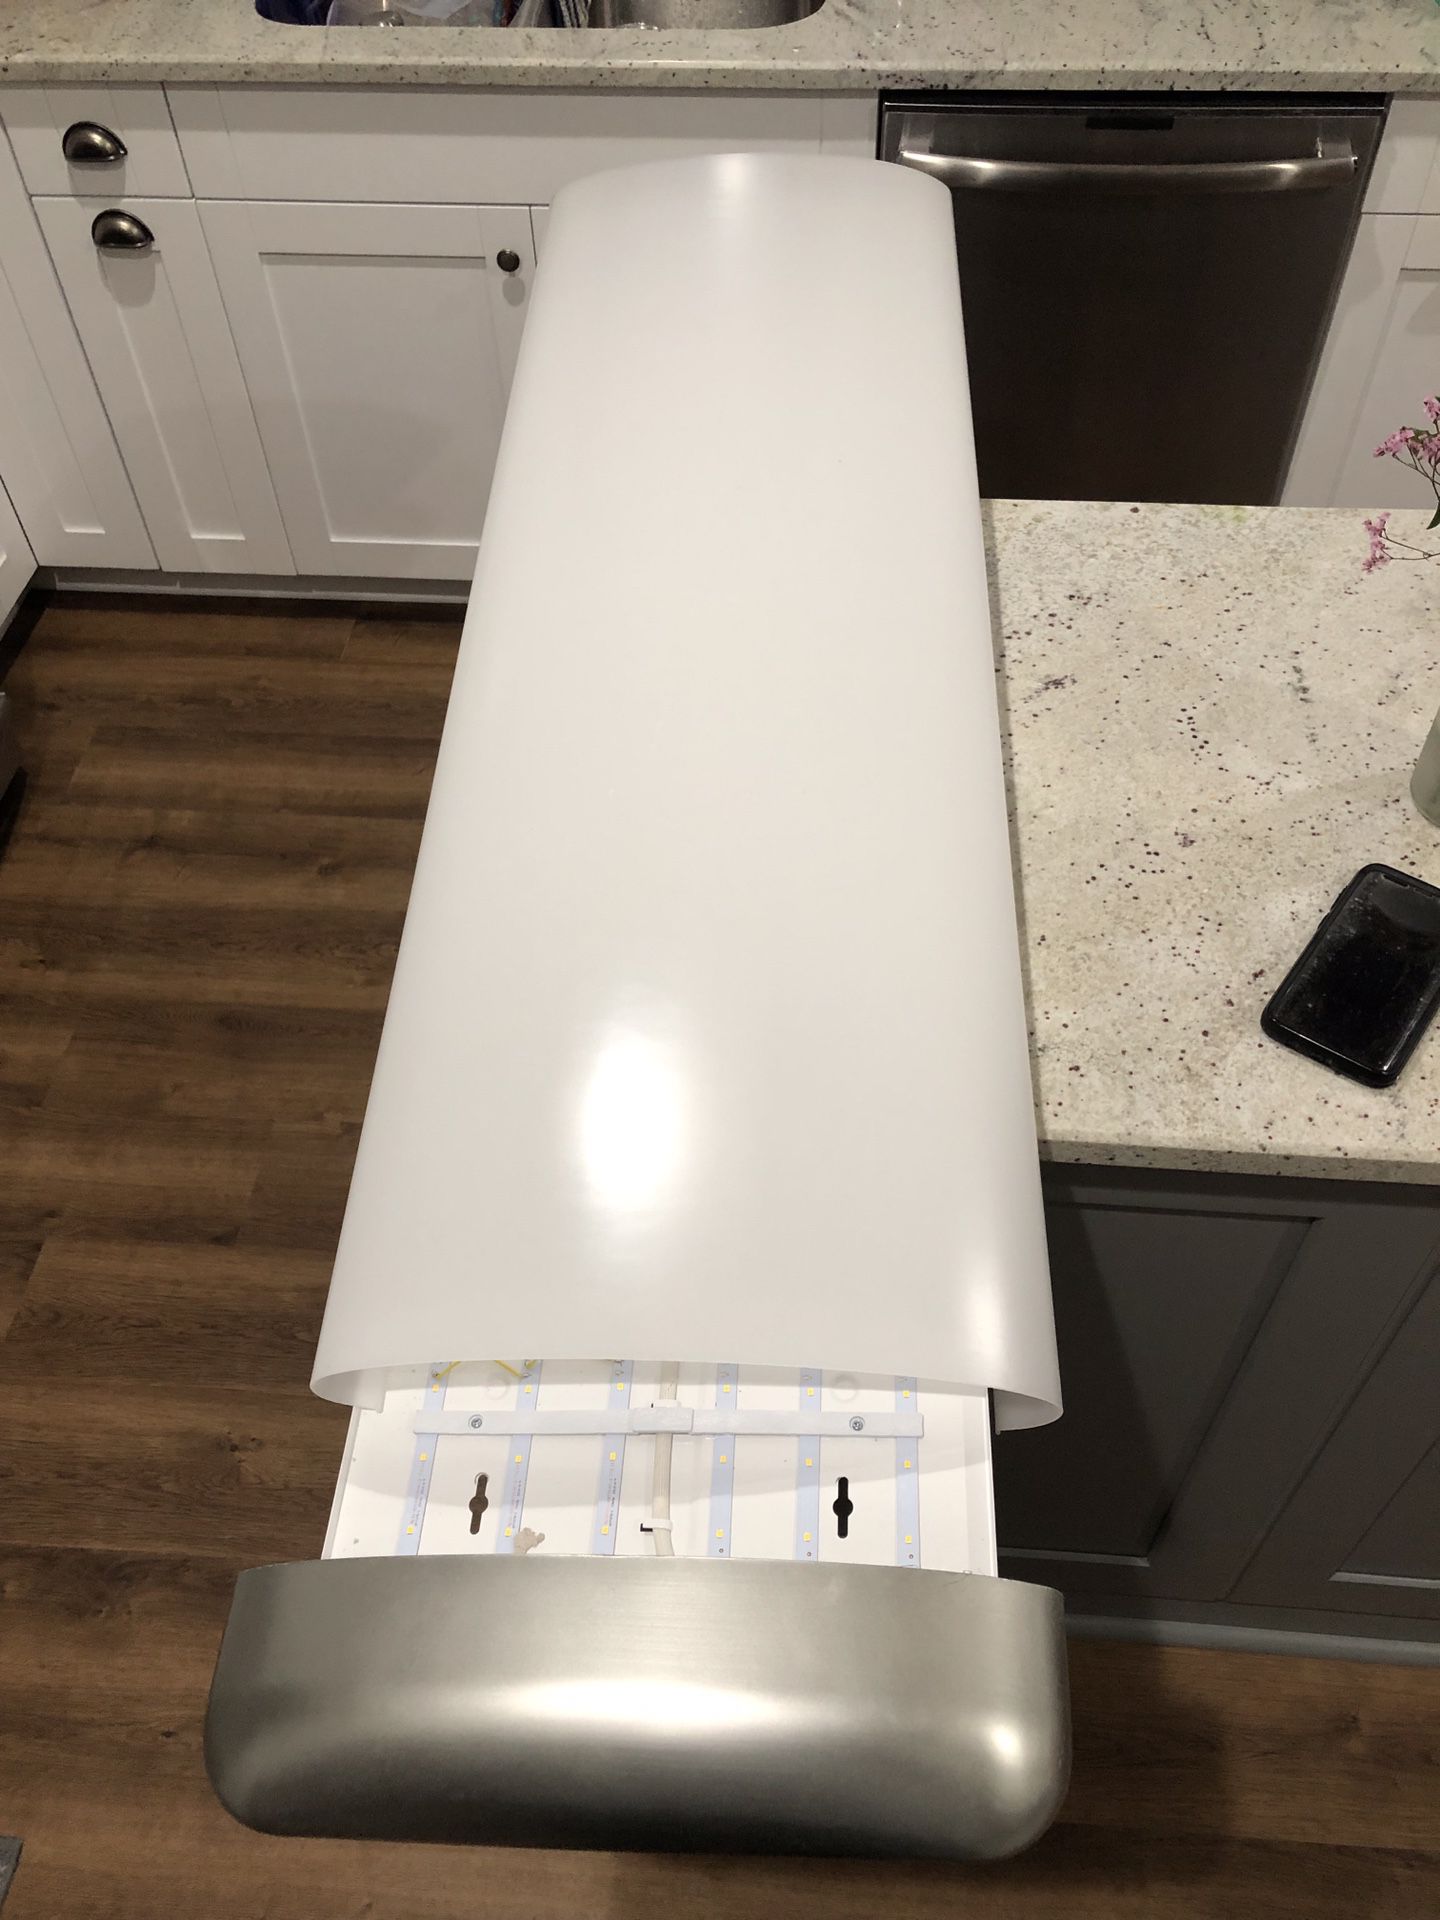 Led kitchen light